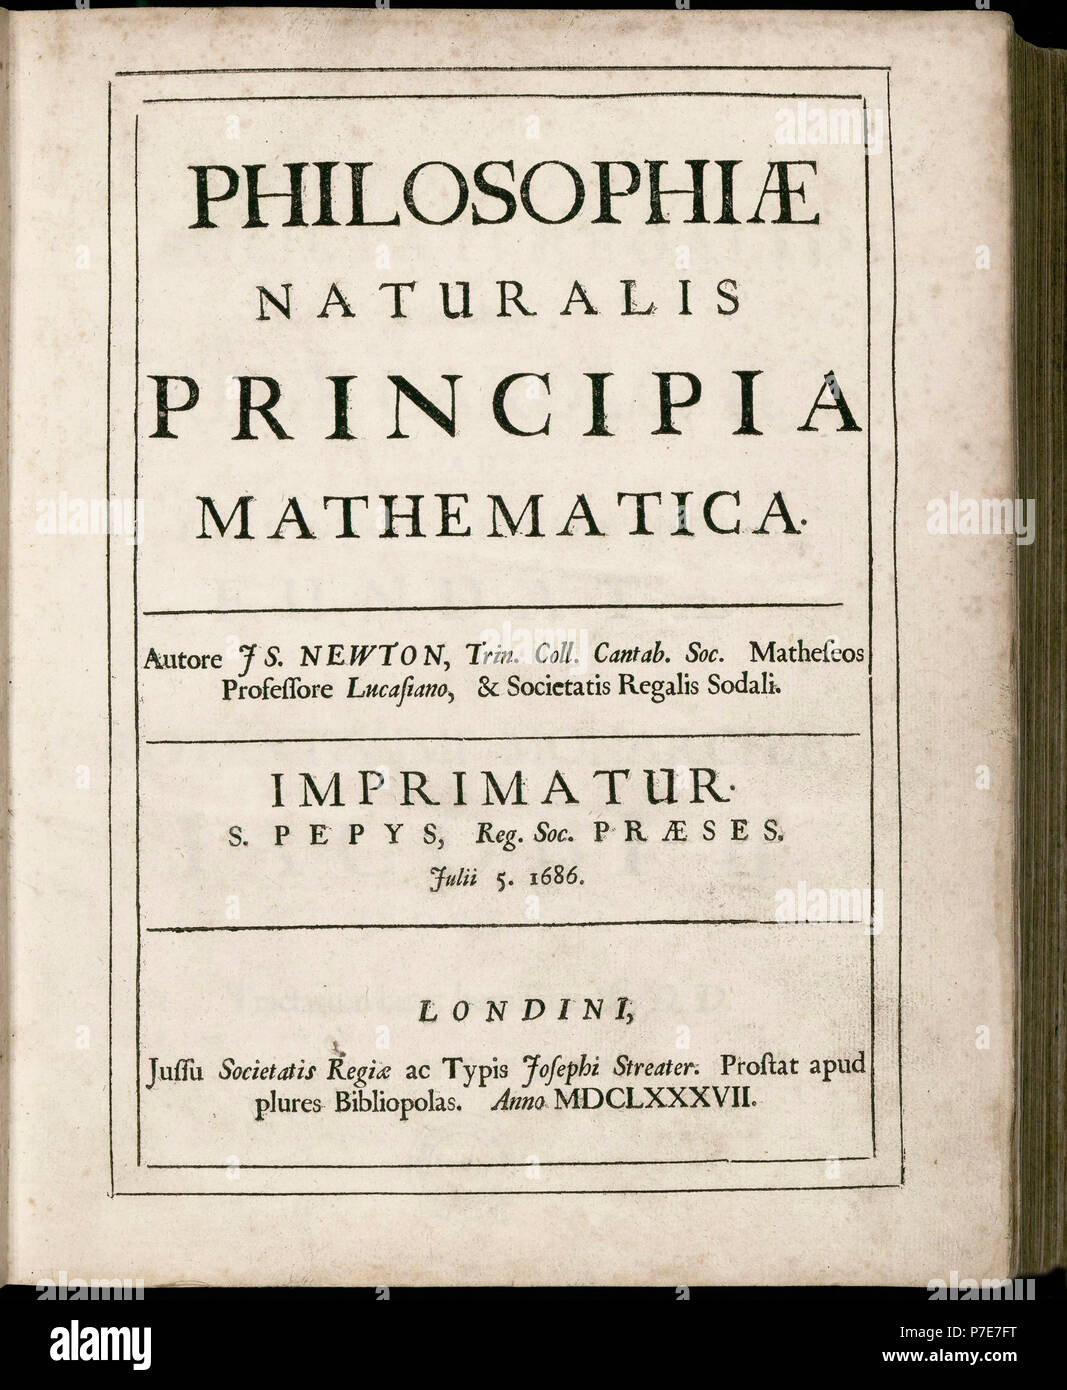 Philosophiae Naturalis Principia Mathematica, von Isaac Newton. (Mathematische Grundlagen der Naturphilosophie). Titelblatt der ersten Ausgabe vom Juli 5, 1687. Stockfoto